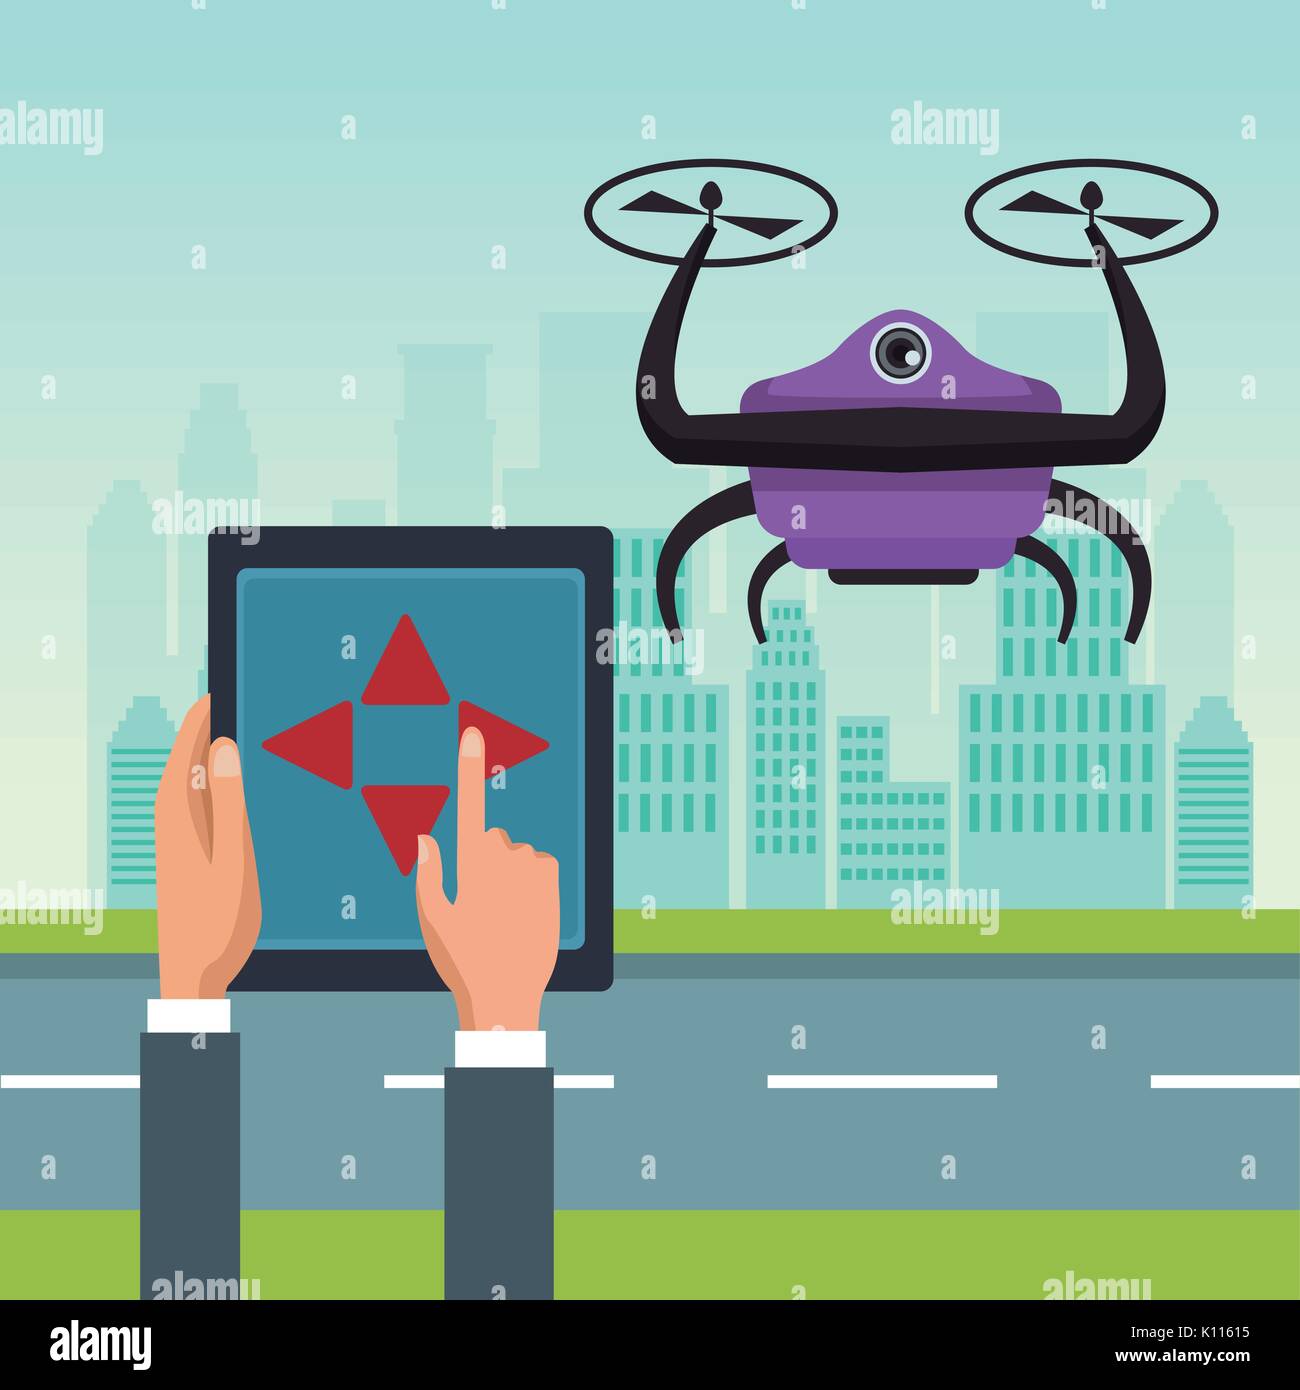 Paysage ciel avec des bâtiments et scène de rue avec des gens traiter avec télécommande robot violet drone avec deux hélice flying Illustration de Vecteur